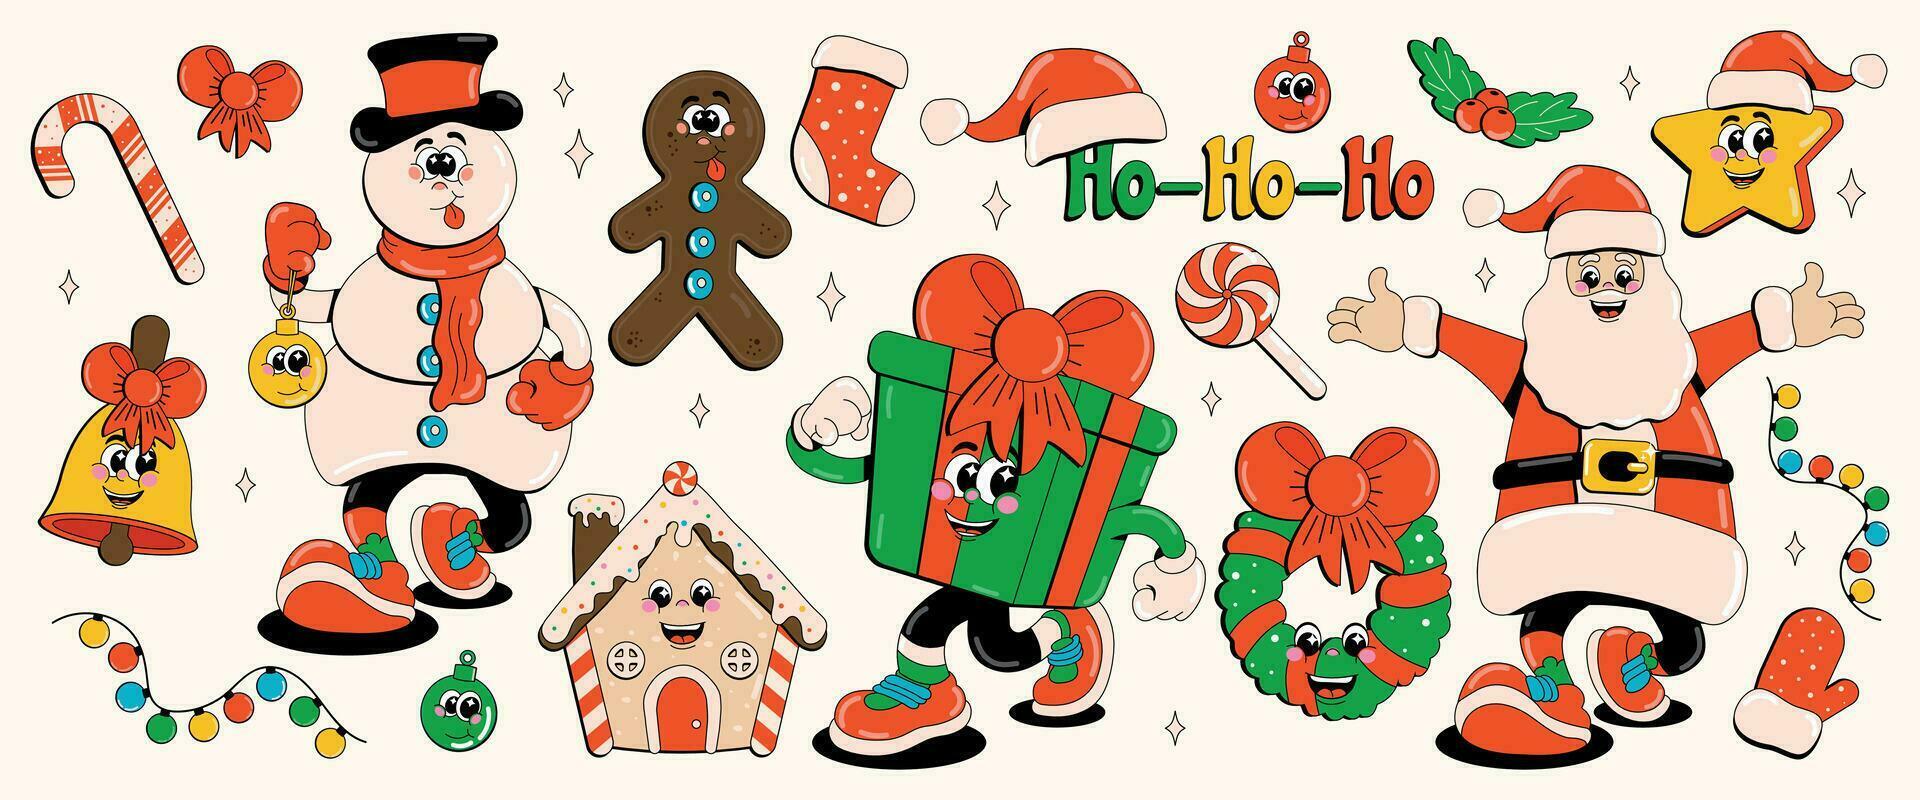 divertente Natale a tema retrò cartone animato personaggi pupazzo di neve, Santa claus, regalo, stella, campana, nuovo anni ghirlanda. vettore illustrazione nel 60-80 stile.